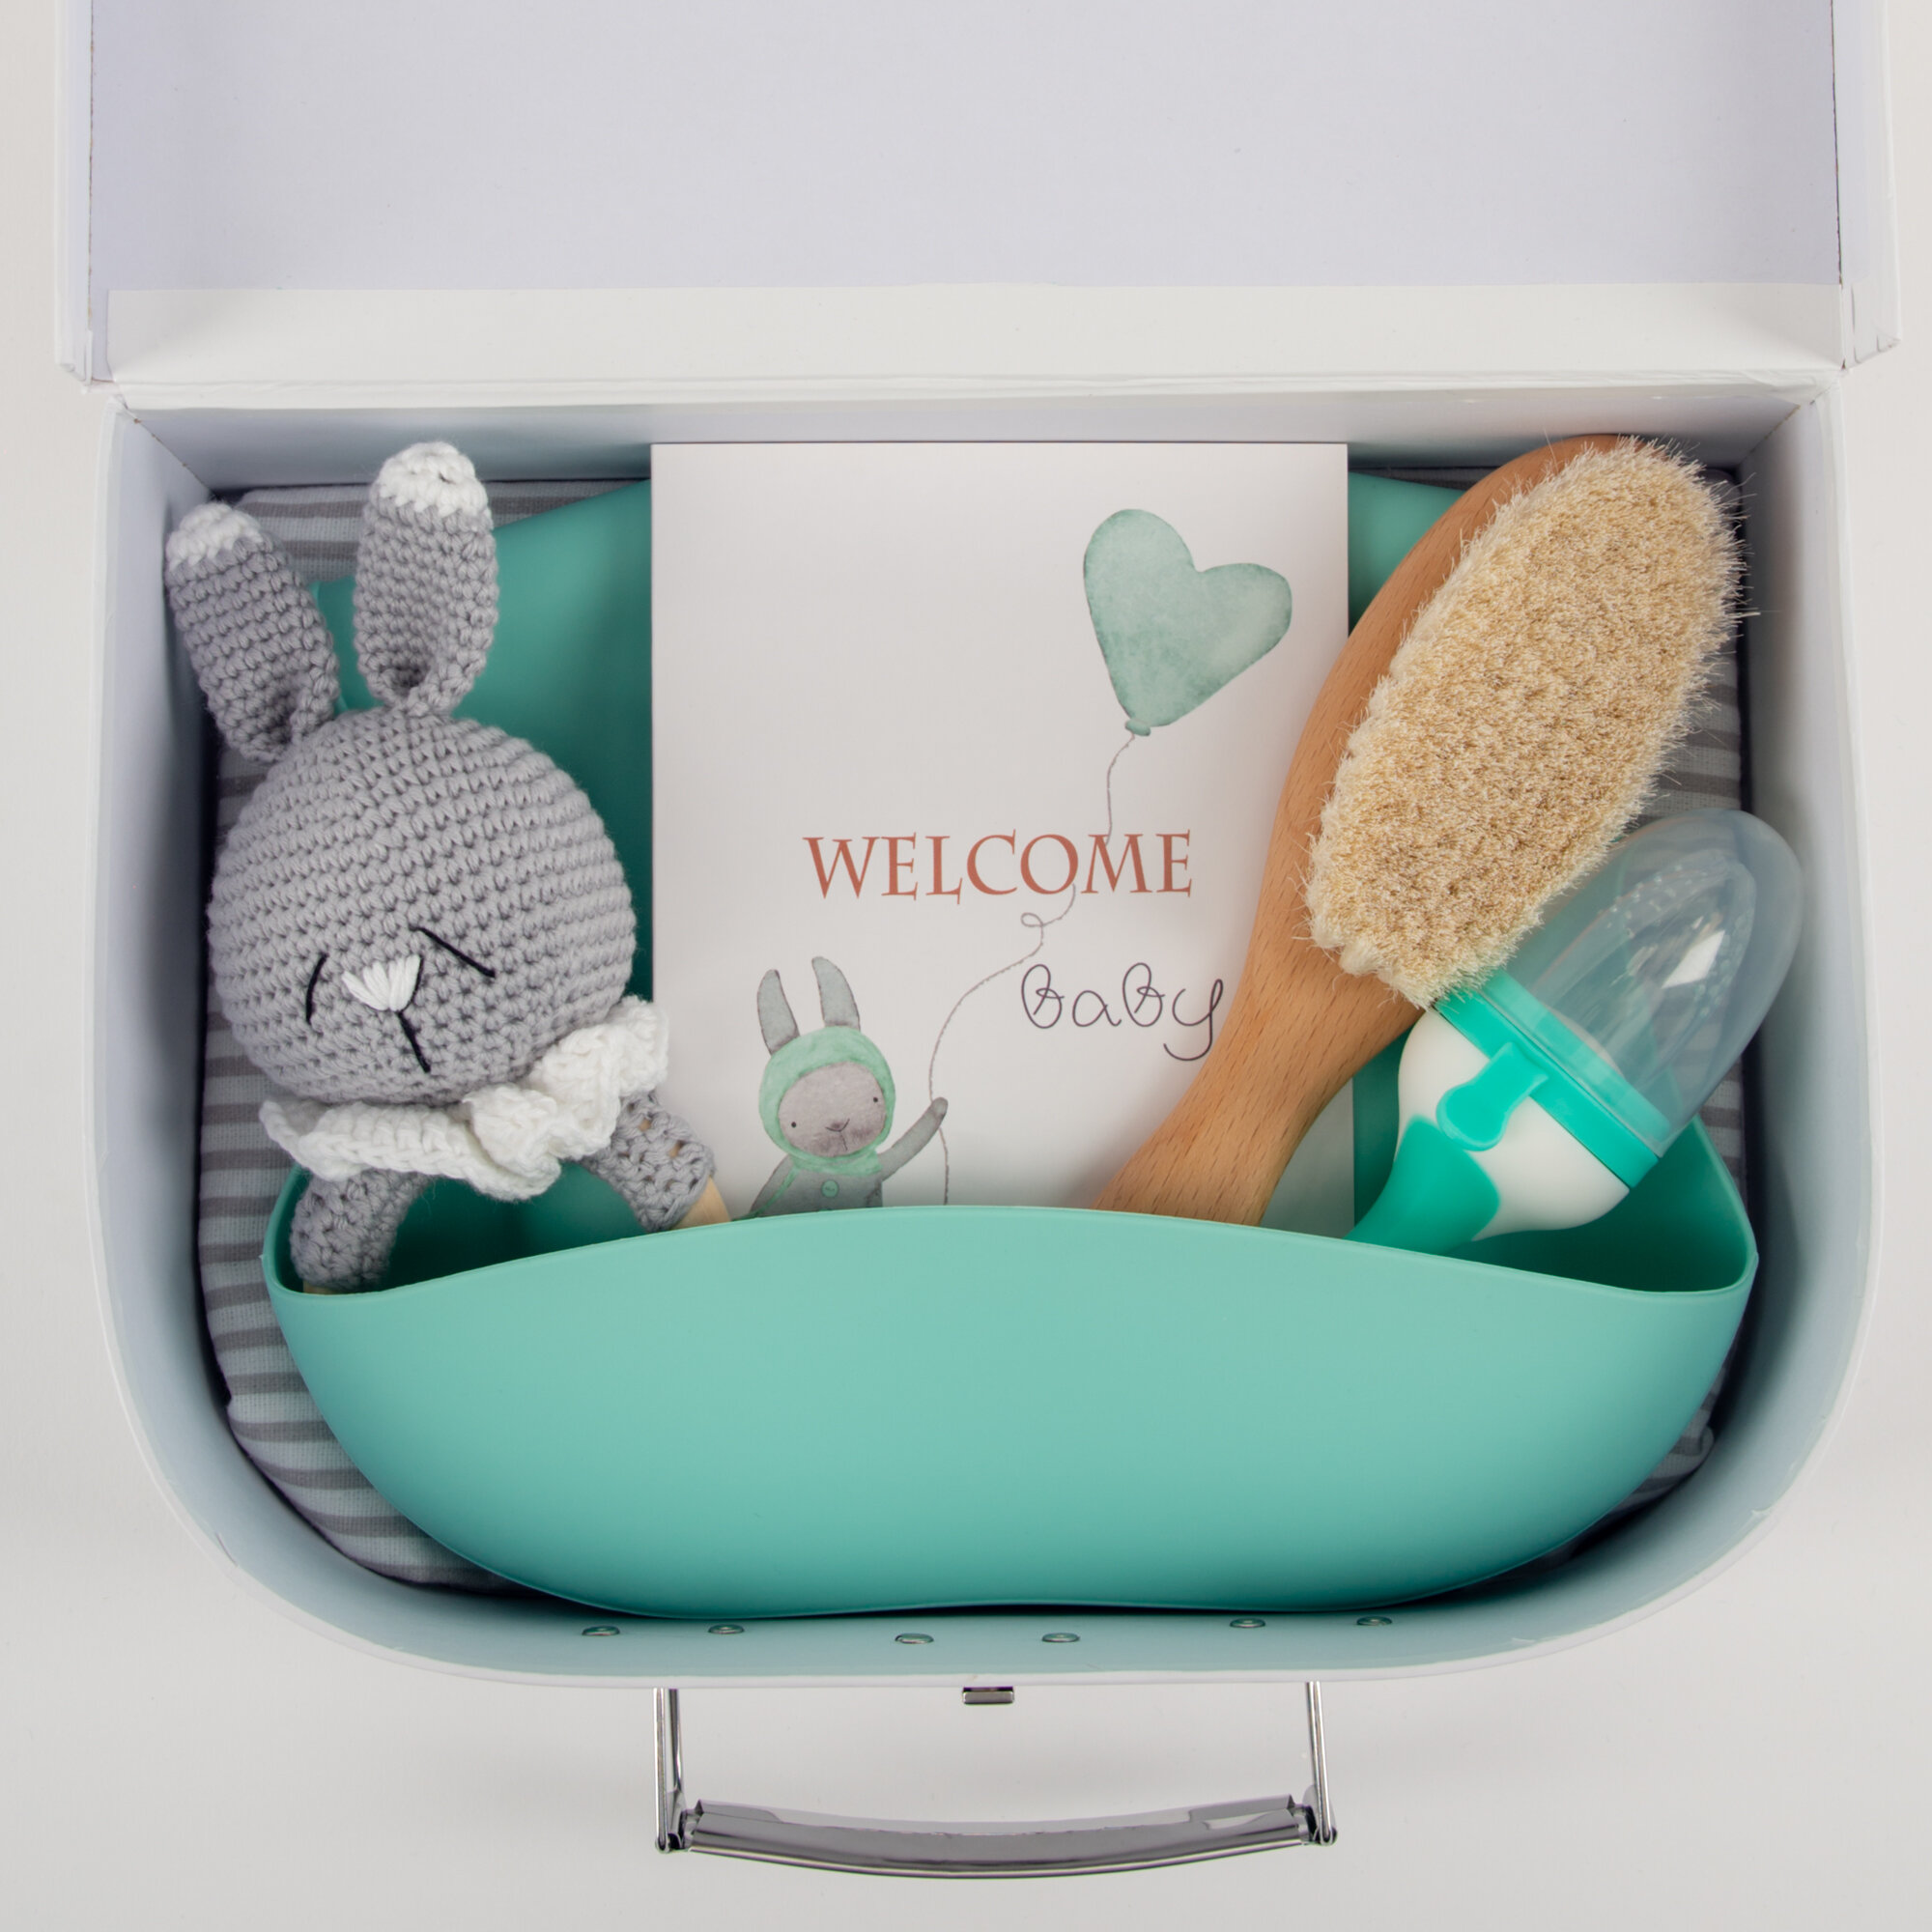 Подарочный набор для новорожденного Ange L`AME / Подарок на день рождения малыша / Набор в роддом / Комплект на выписку новорожденного